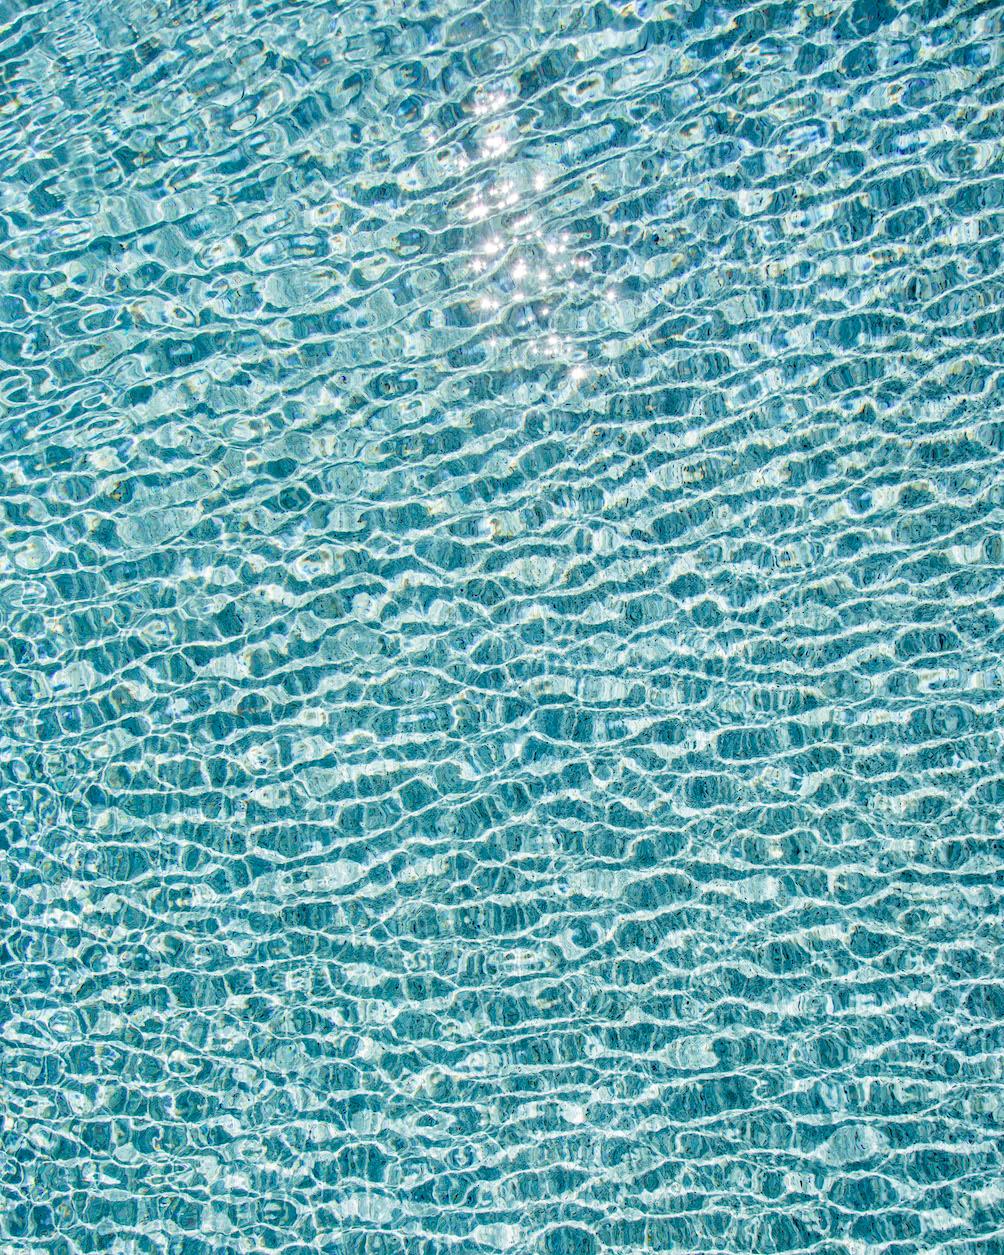 Erik Pawassar Abstract Photograph – H2O V - Großformatfotografie von Sonnenspiegelungen auf der Wasseroberfläche eines Pools